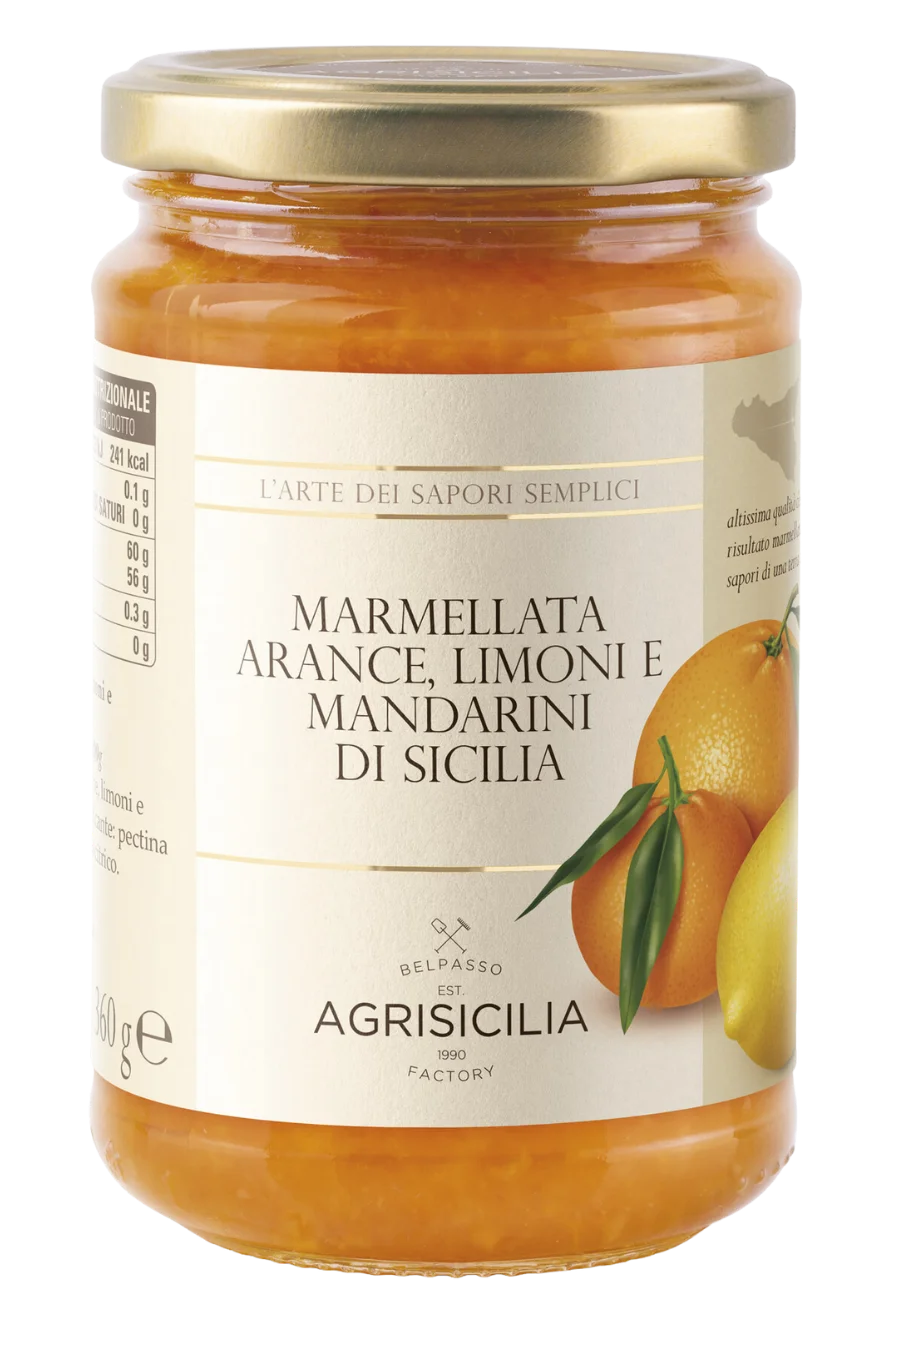 Marmellata di agrumi di Sicilia, un delizioso prodotto d'eccellenza dalle note fresche e aromatiche. Gusta il sapore degli agrumi siciliani con ogni cucchiaio.